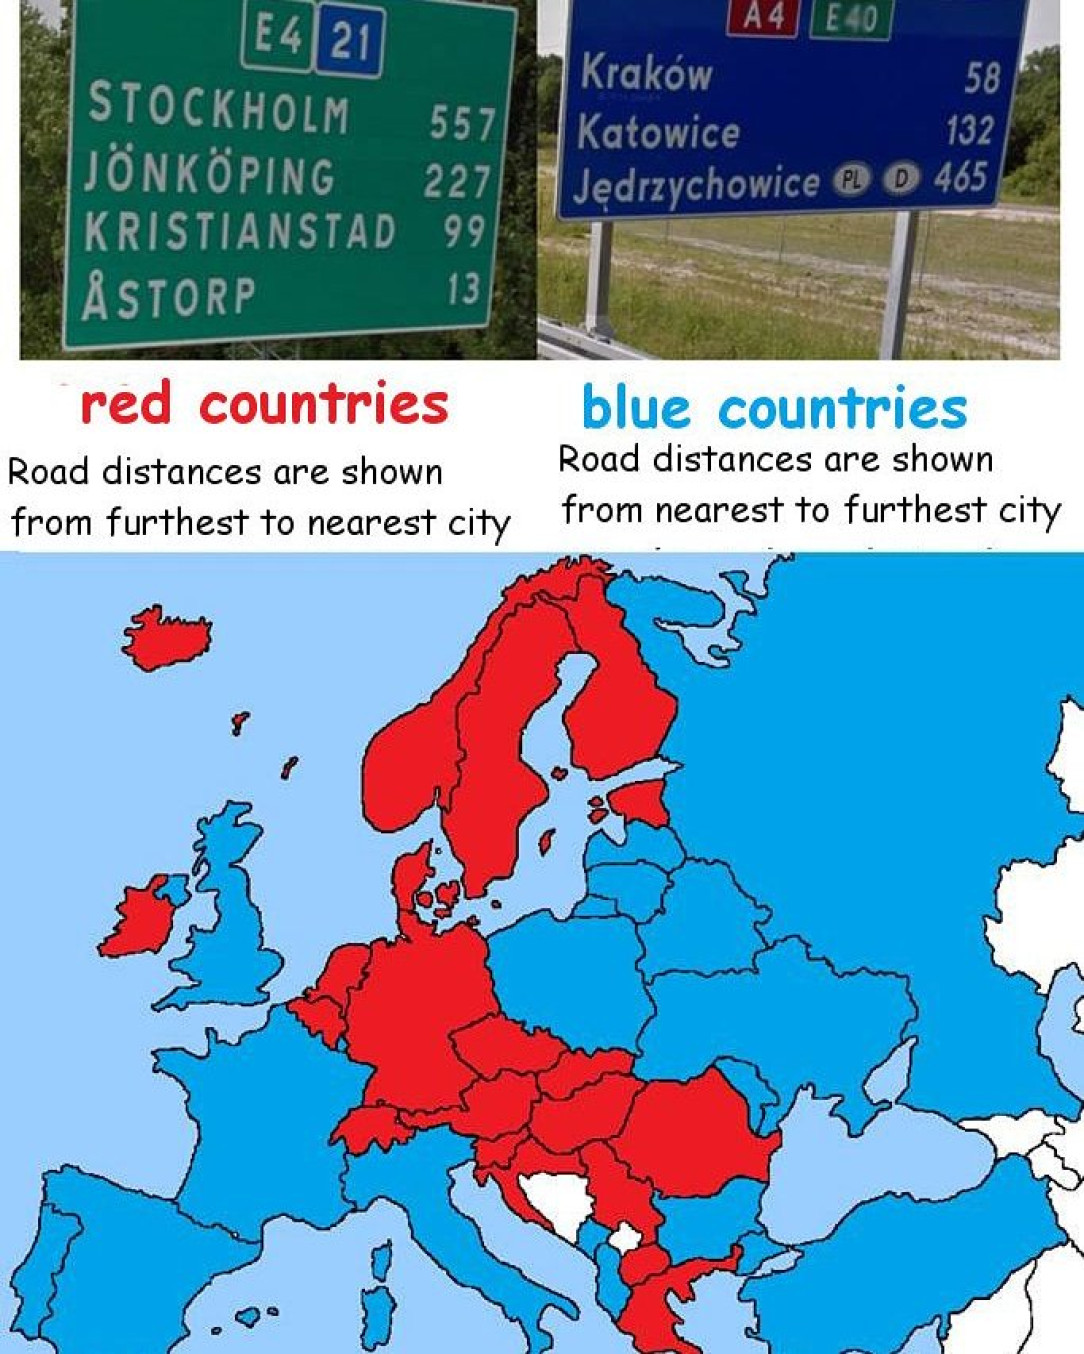 Road distances shown